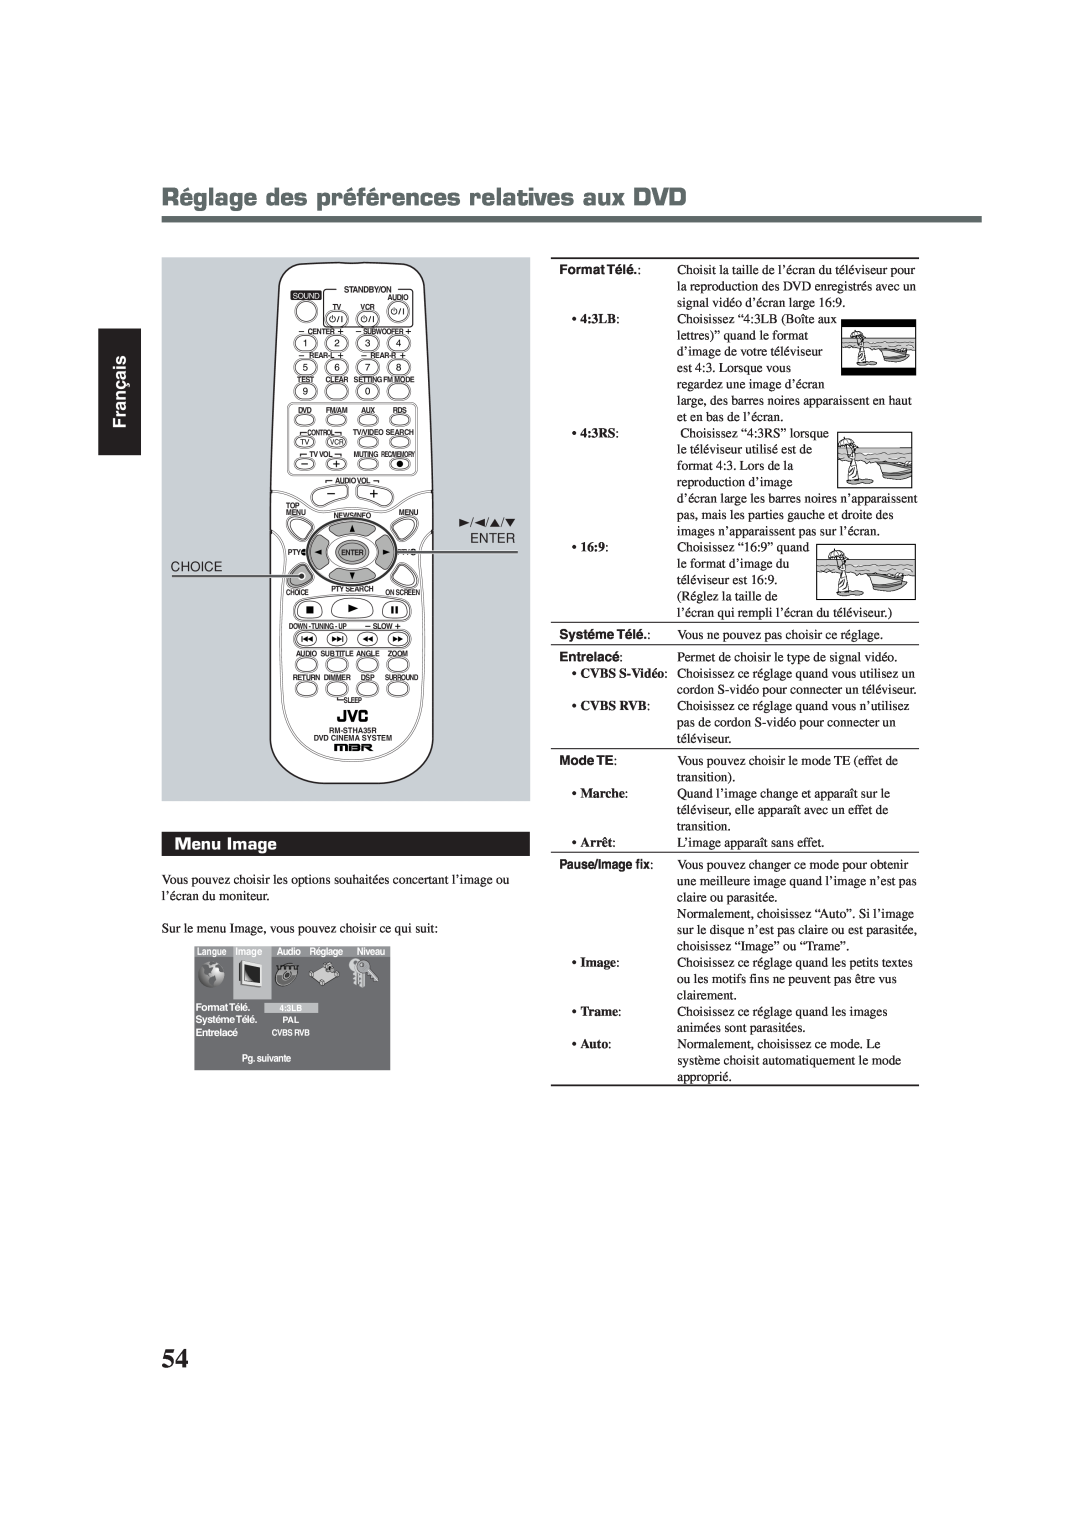 Lennox Hearth TH-A35 manual Réglage des préférences relatives aux DVD, Menu Image, Français, Enter, Choice, Systéme Télé 